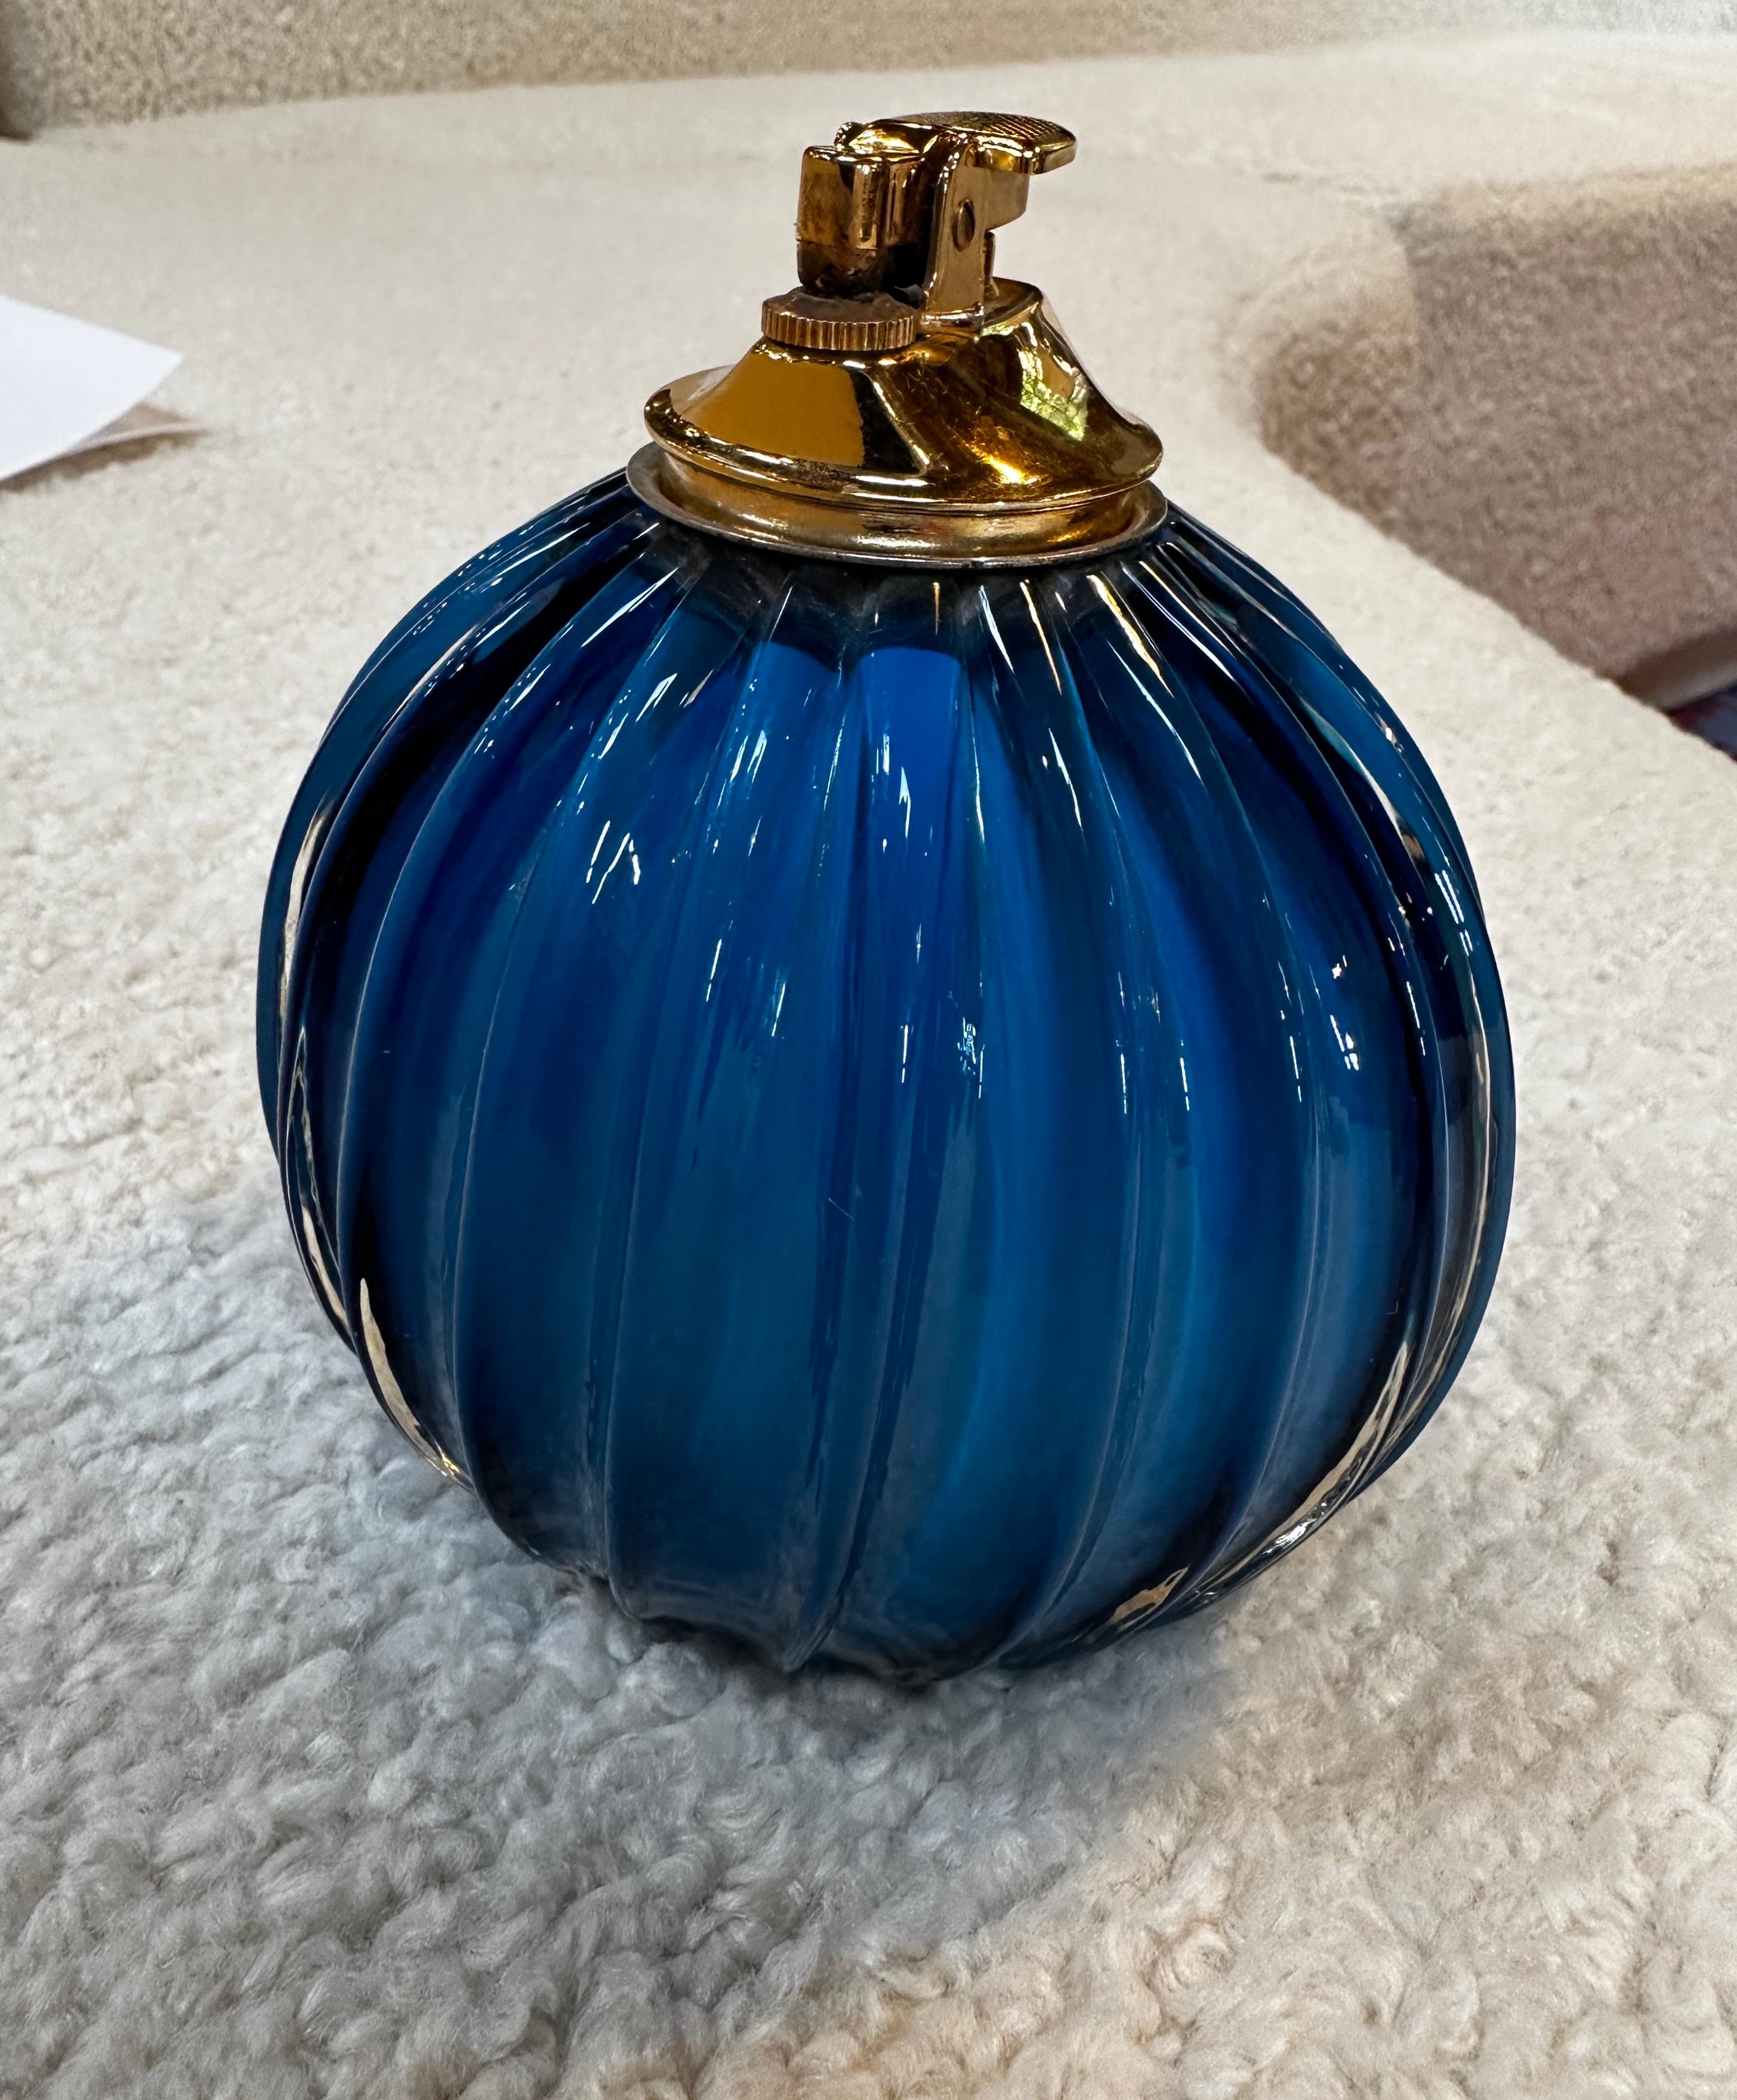 Wunderschönes Feuerzeug aus blauem Glas und Messing von Tommaso Barbi.
 